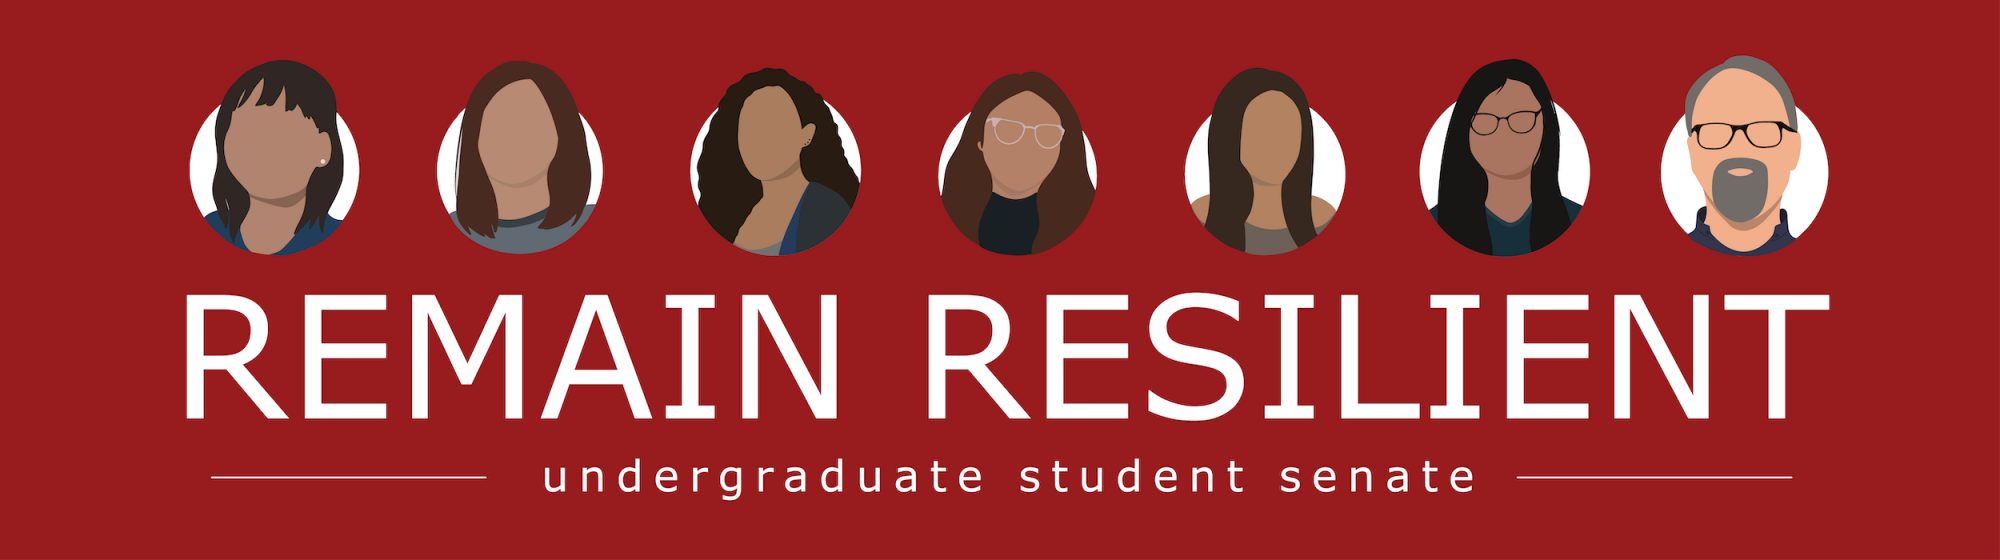 Undergrad student senate logo